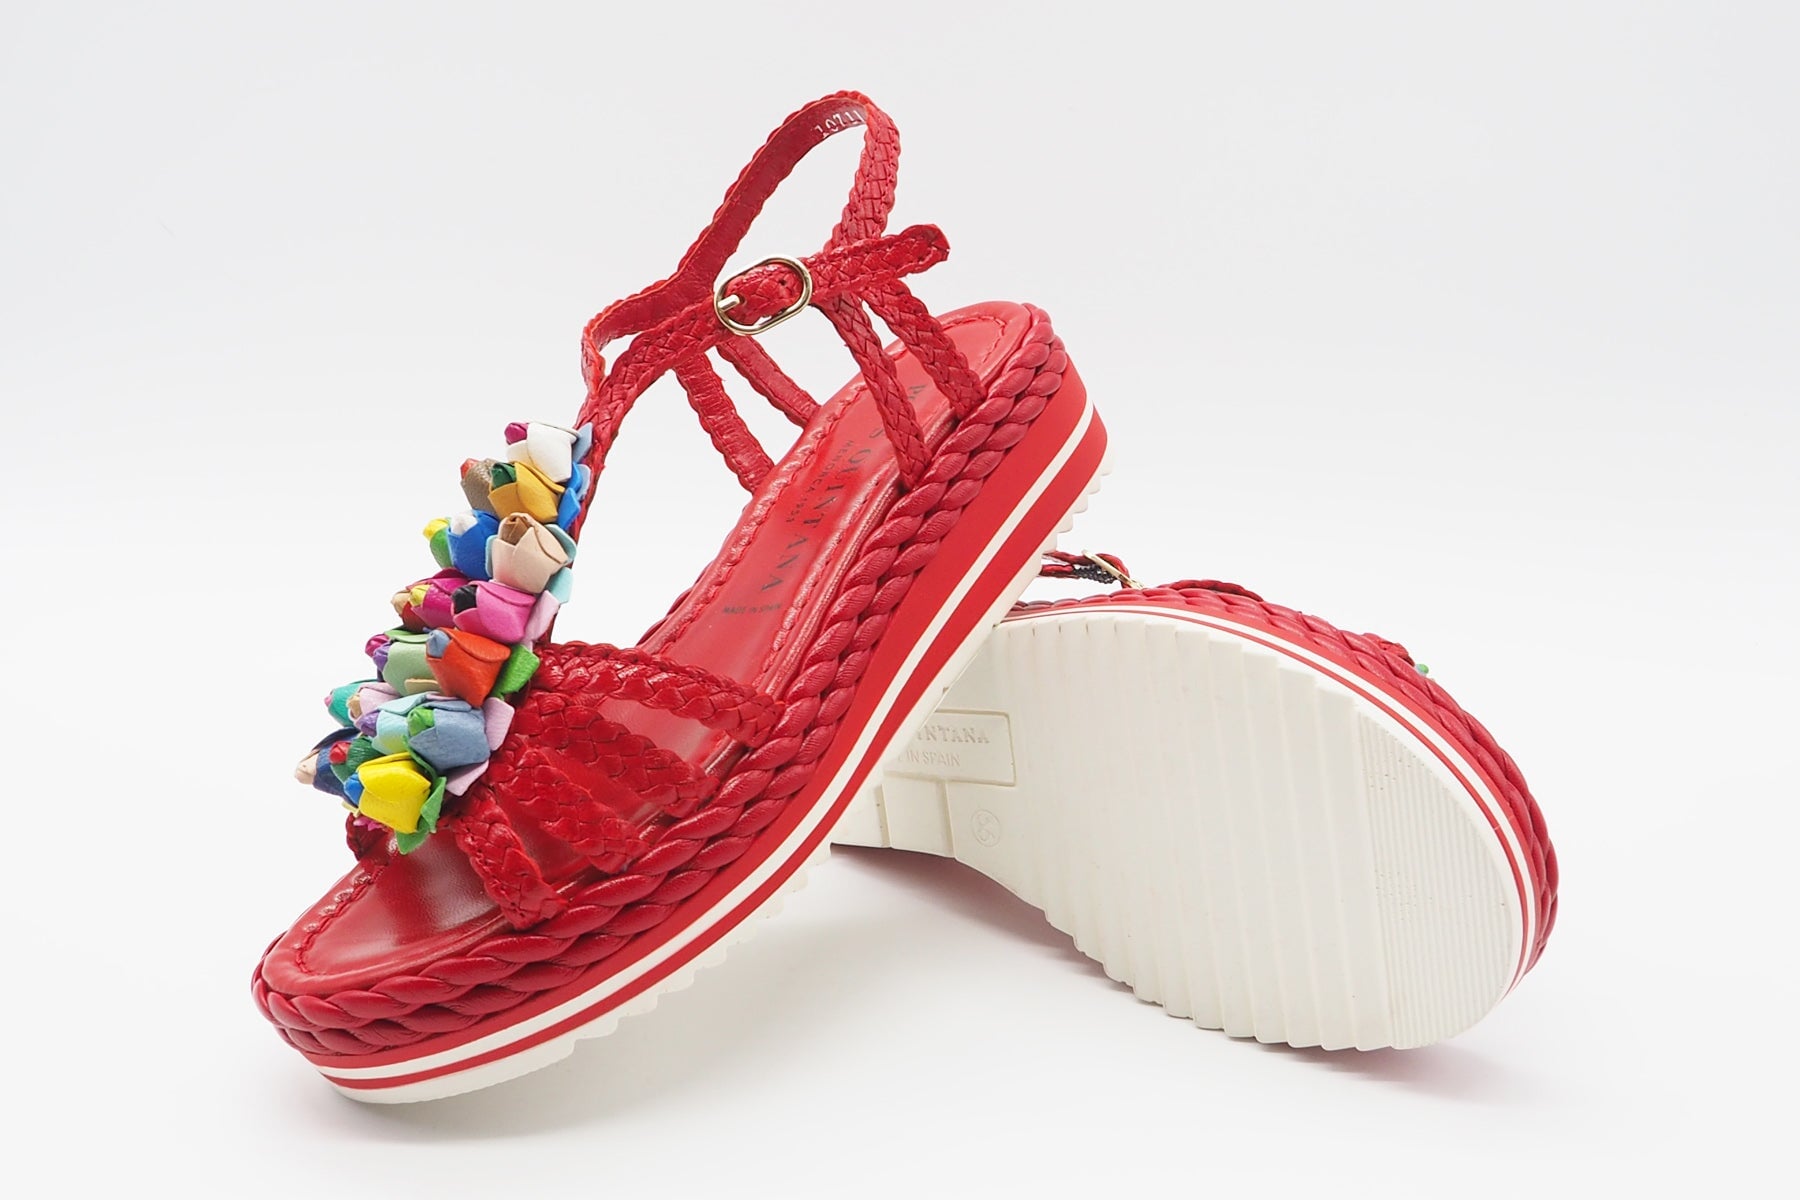 Damen Sandale aus geflochtenem Leder in Rot mit bunte Blumen - Absatz 4cm Damen Sandalen Pons Quintana 